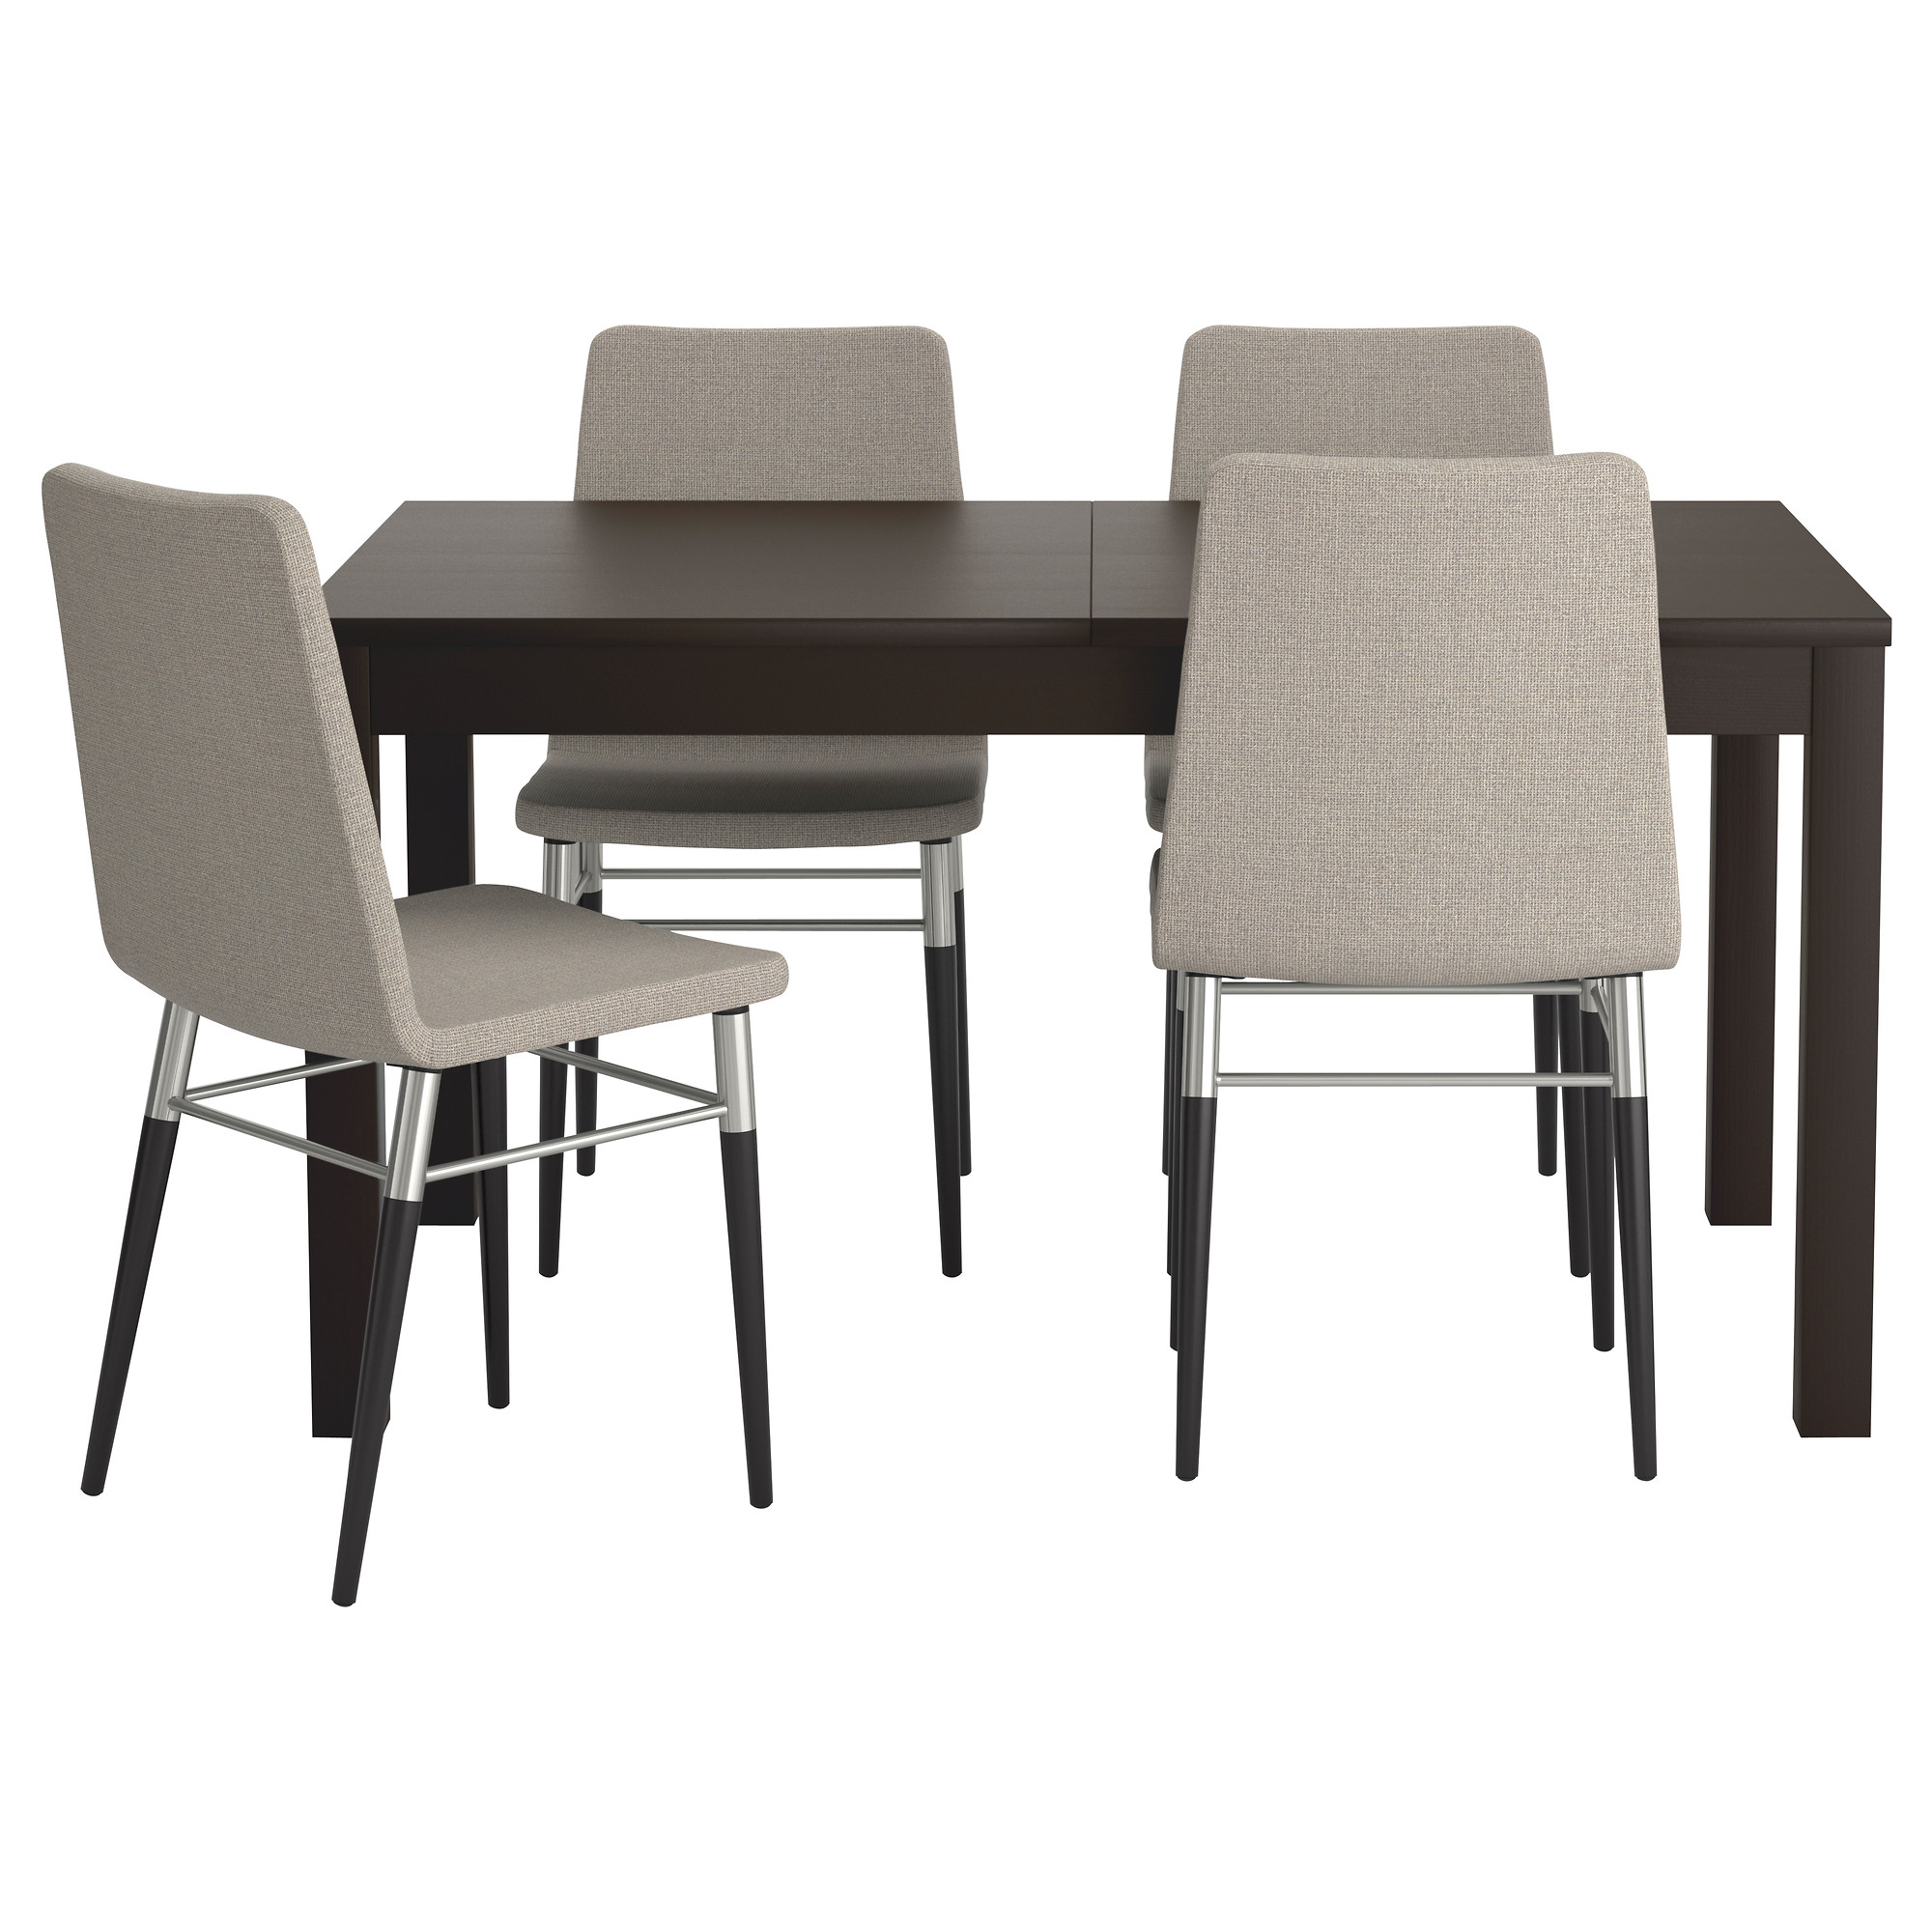 Ikea Table And Chair Set - Decor Ideas